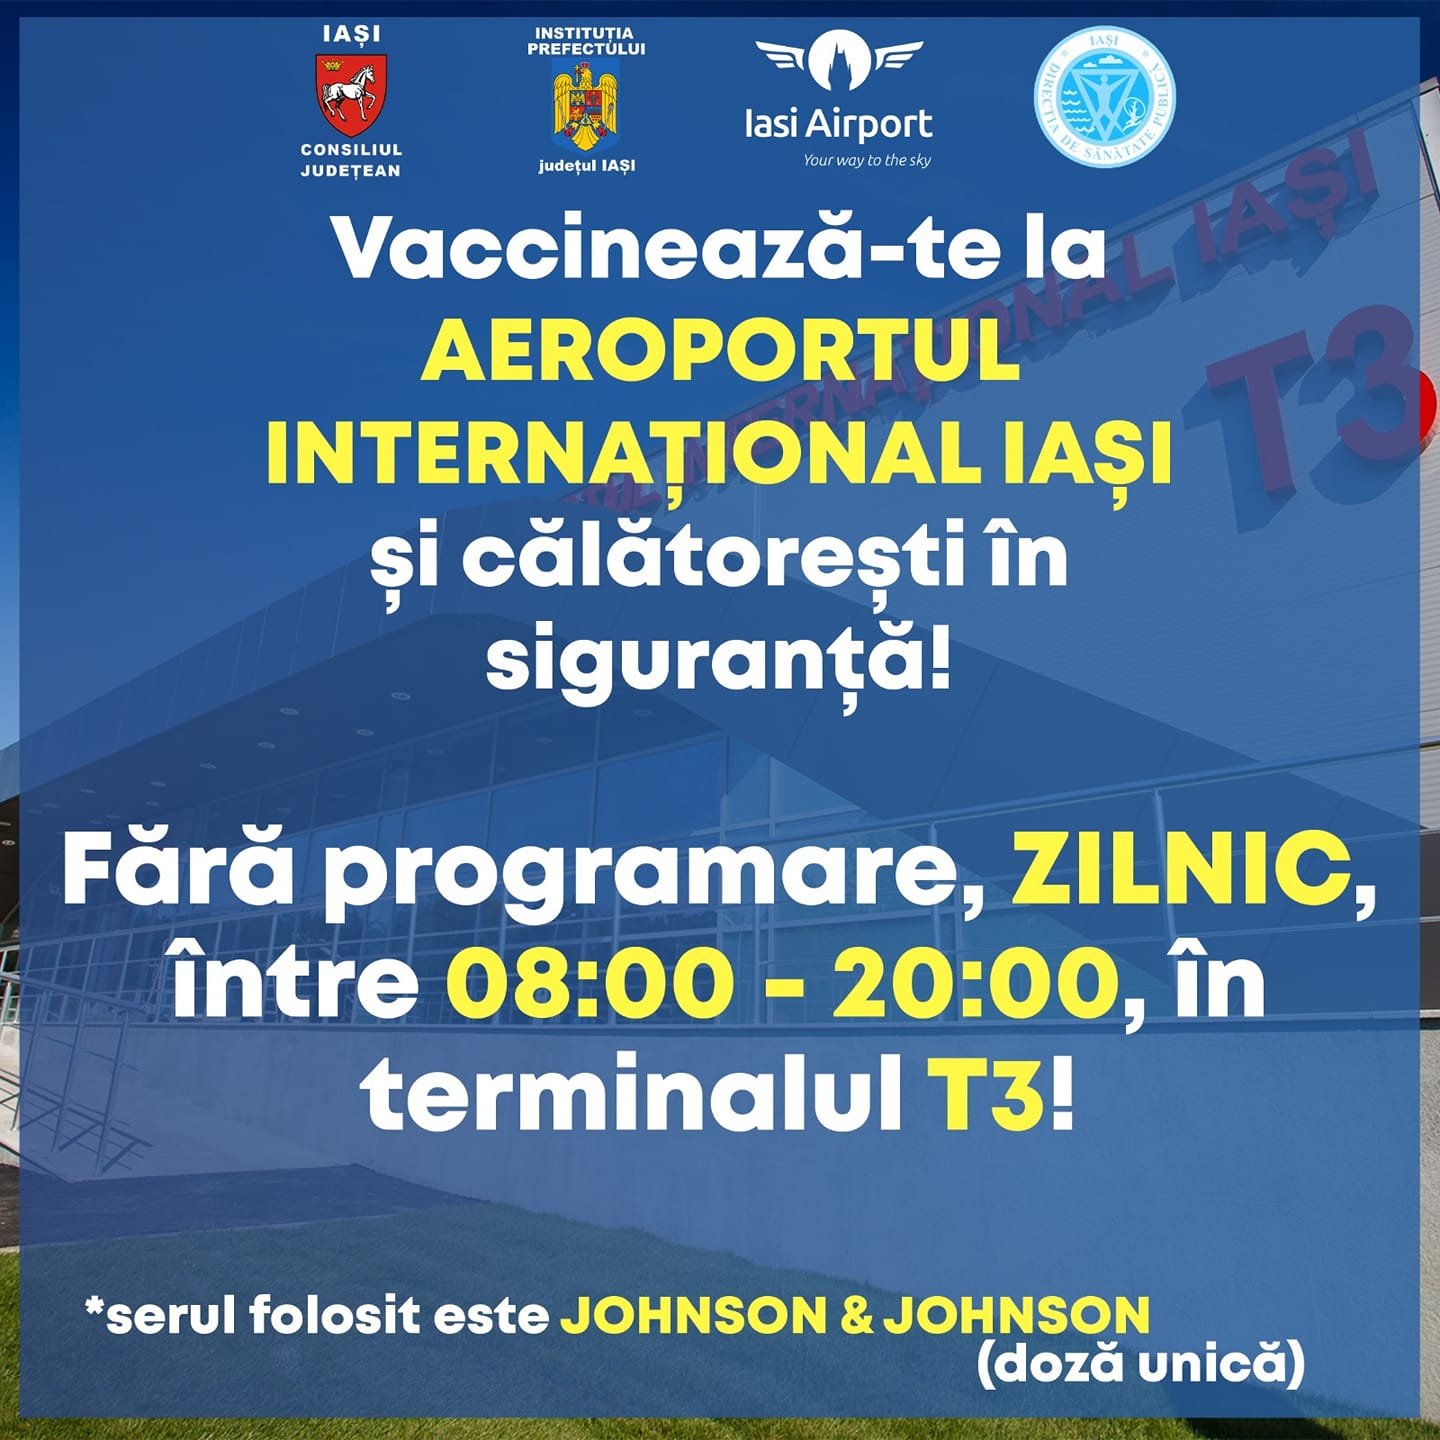  Vaccinare fără programare la Aeroportul Iaşi cu Johnson&Johnson